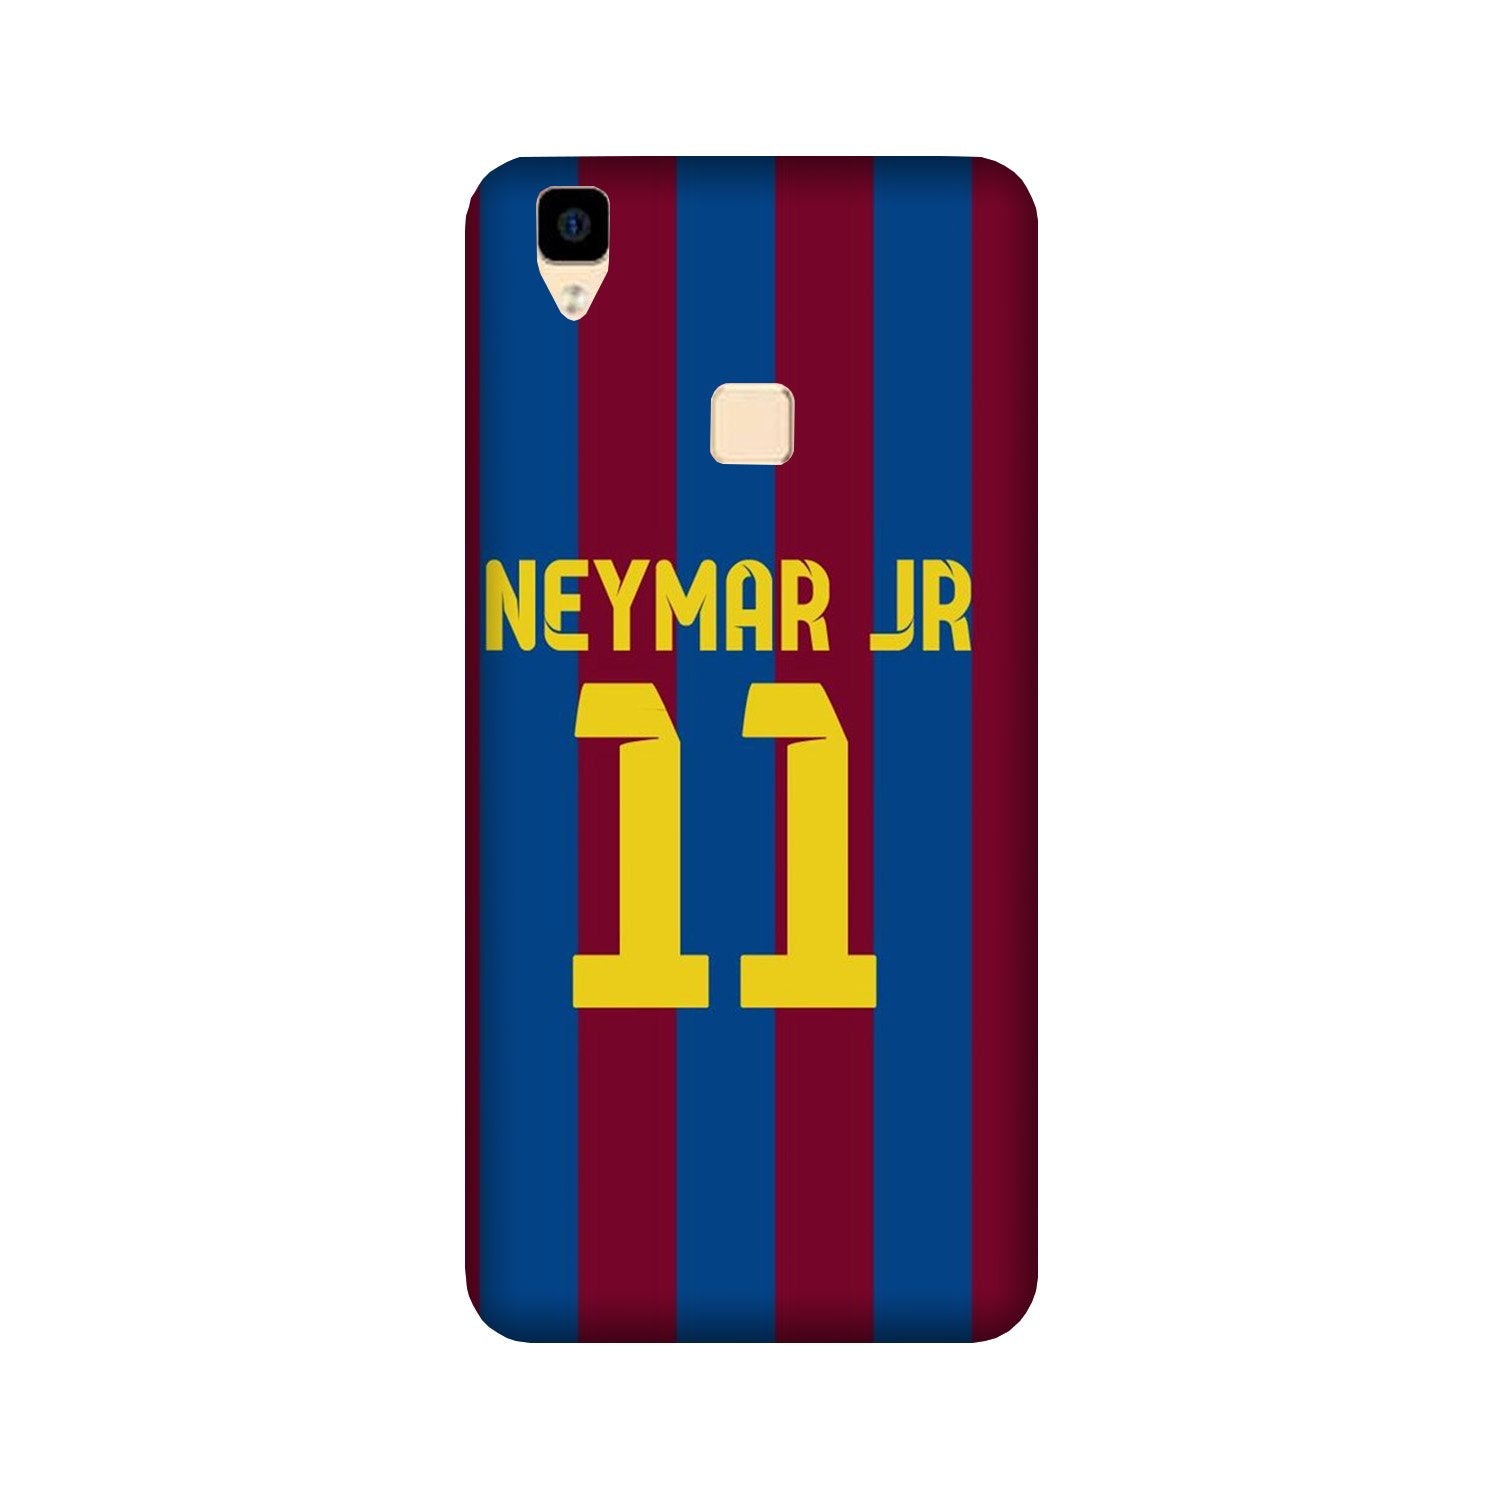 Neymar Jr Case for Vivo V3(Design - 162)